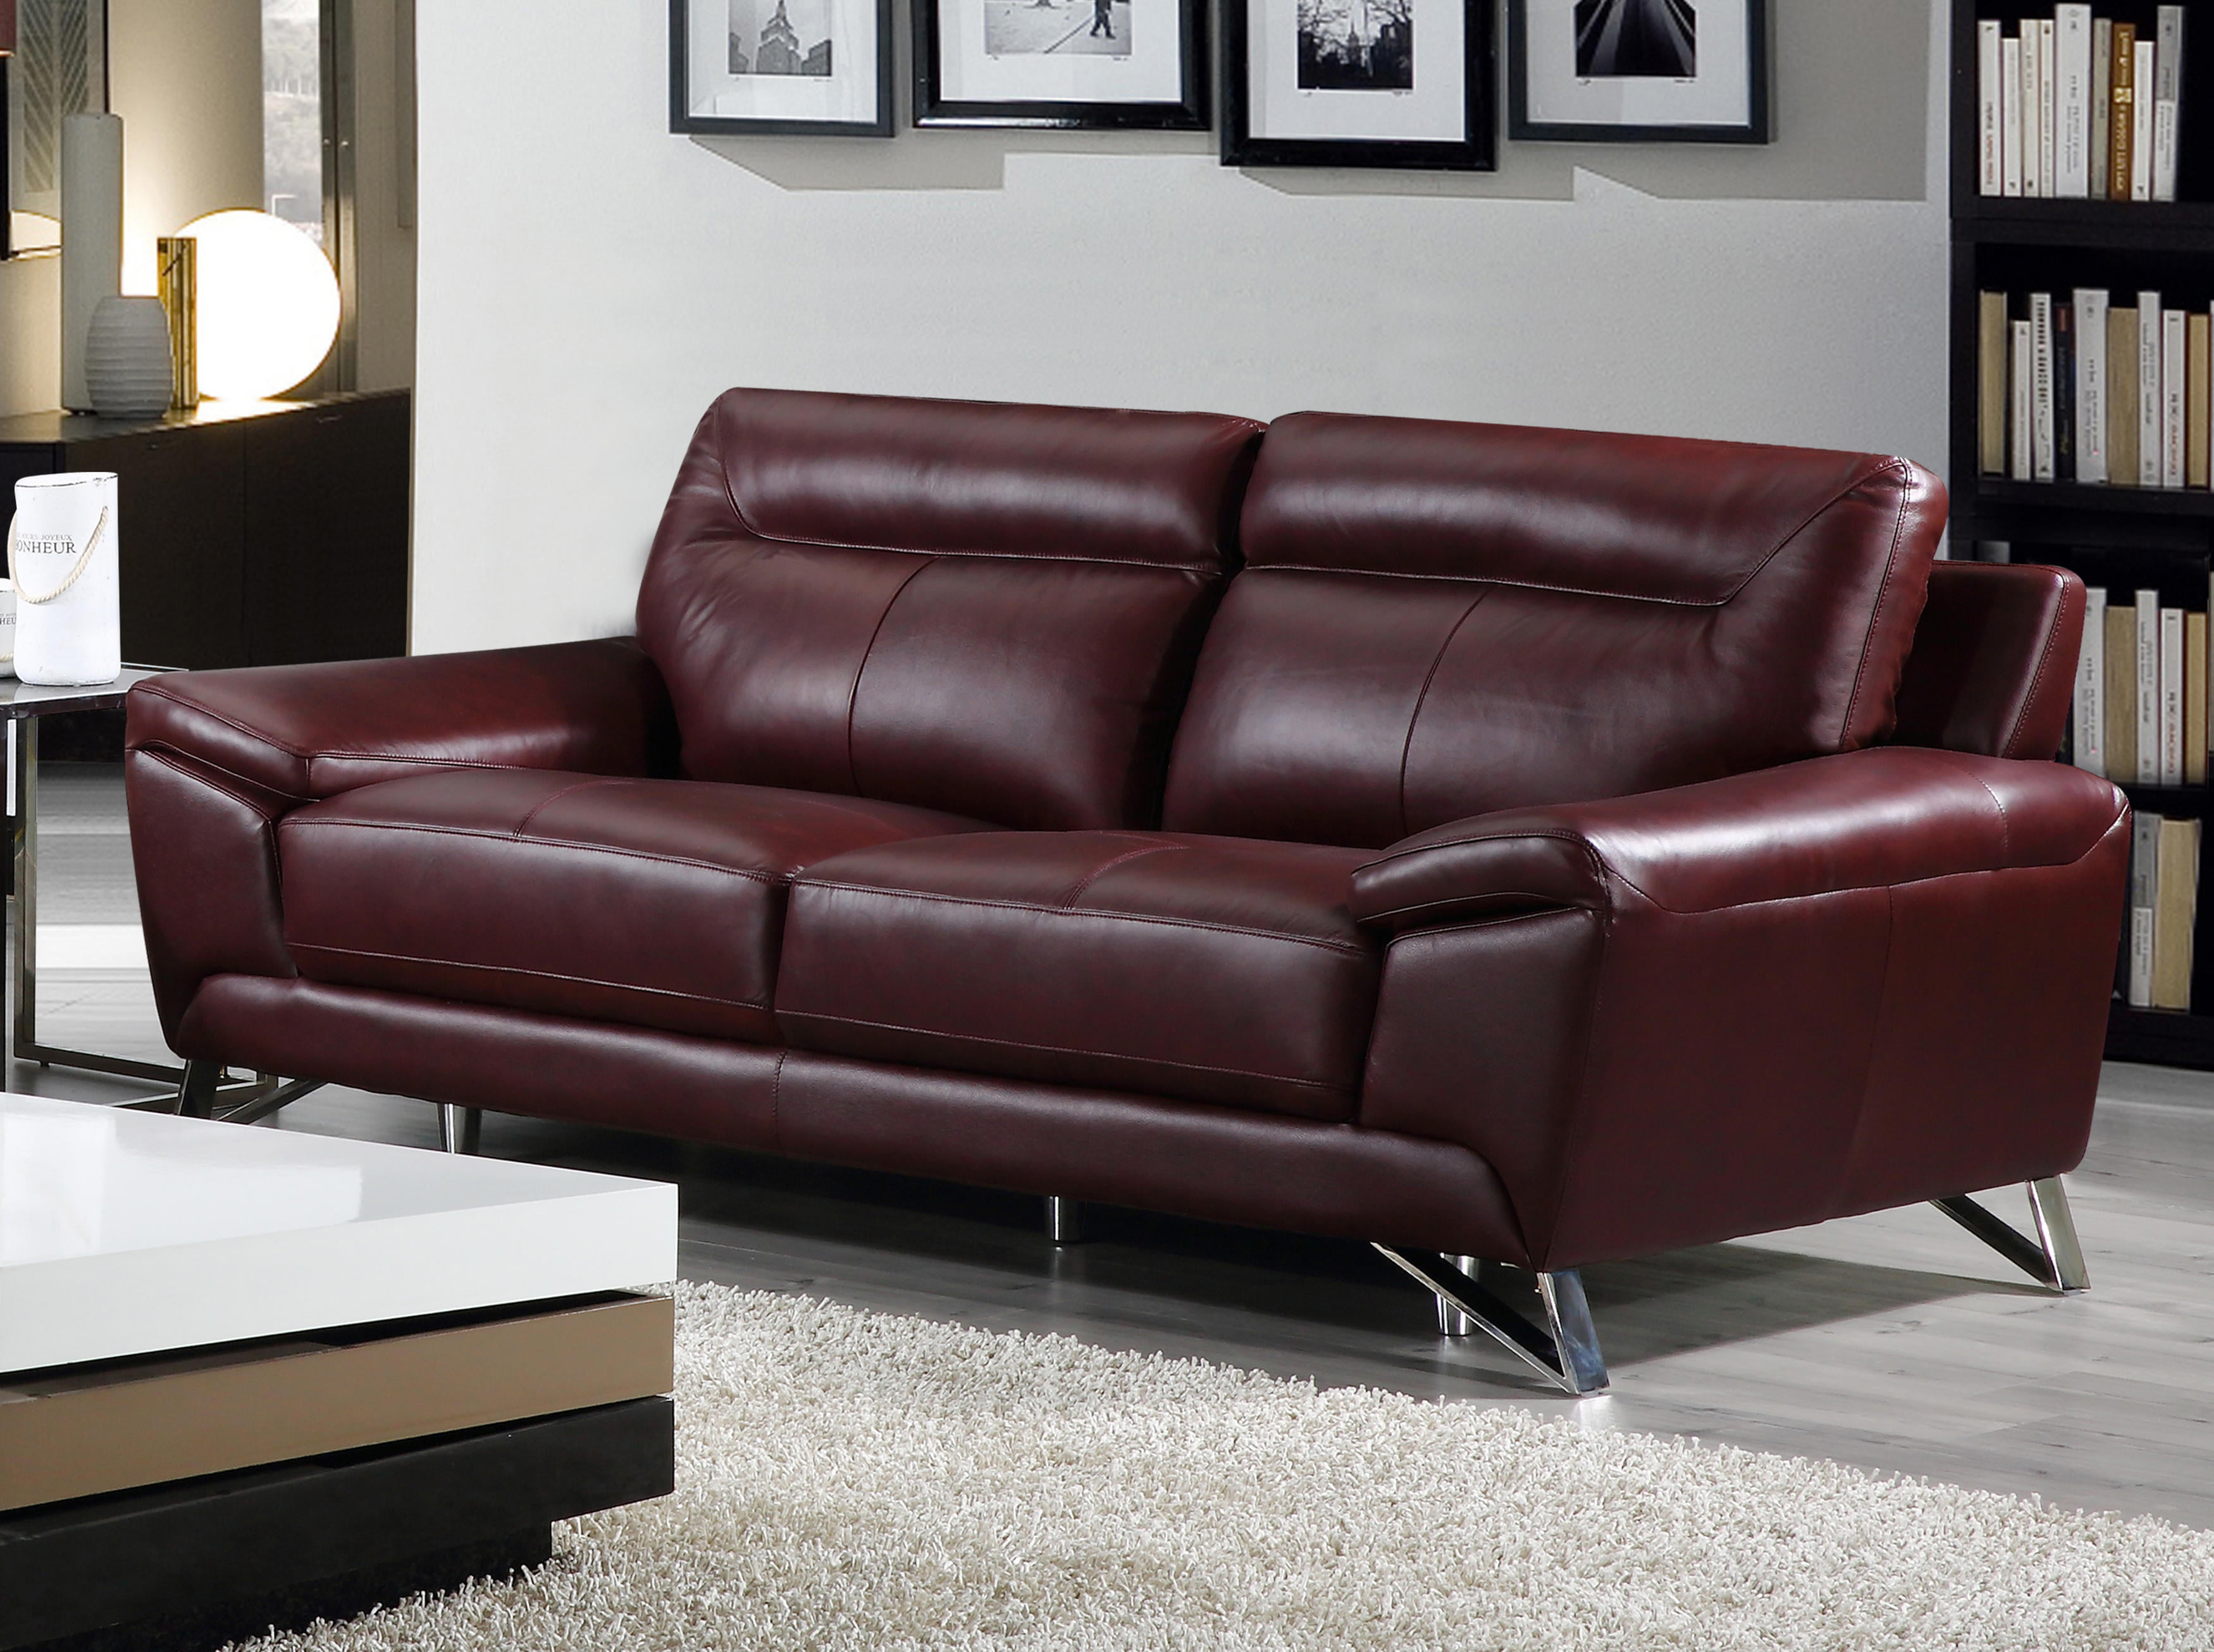 real leather sofa vs fake